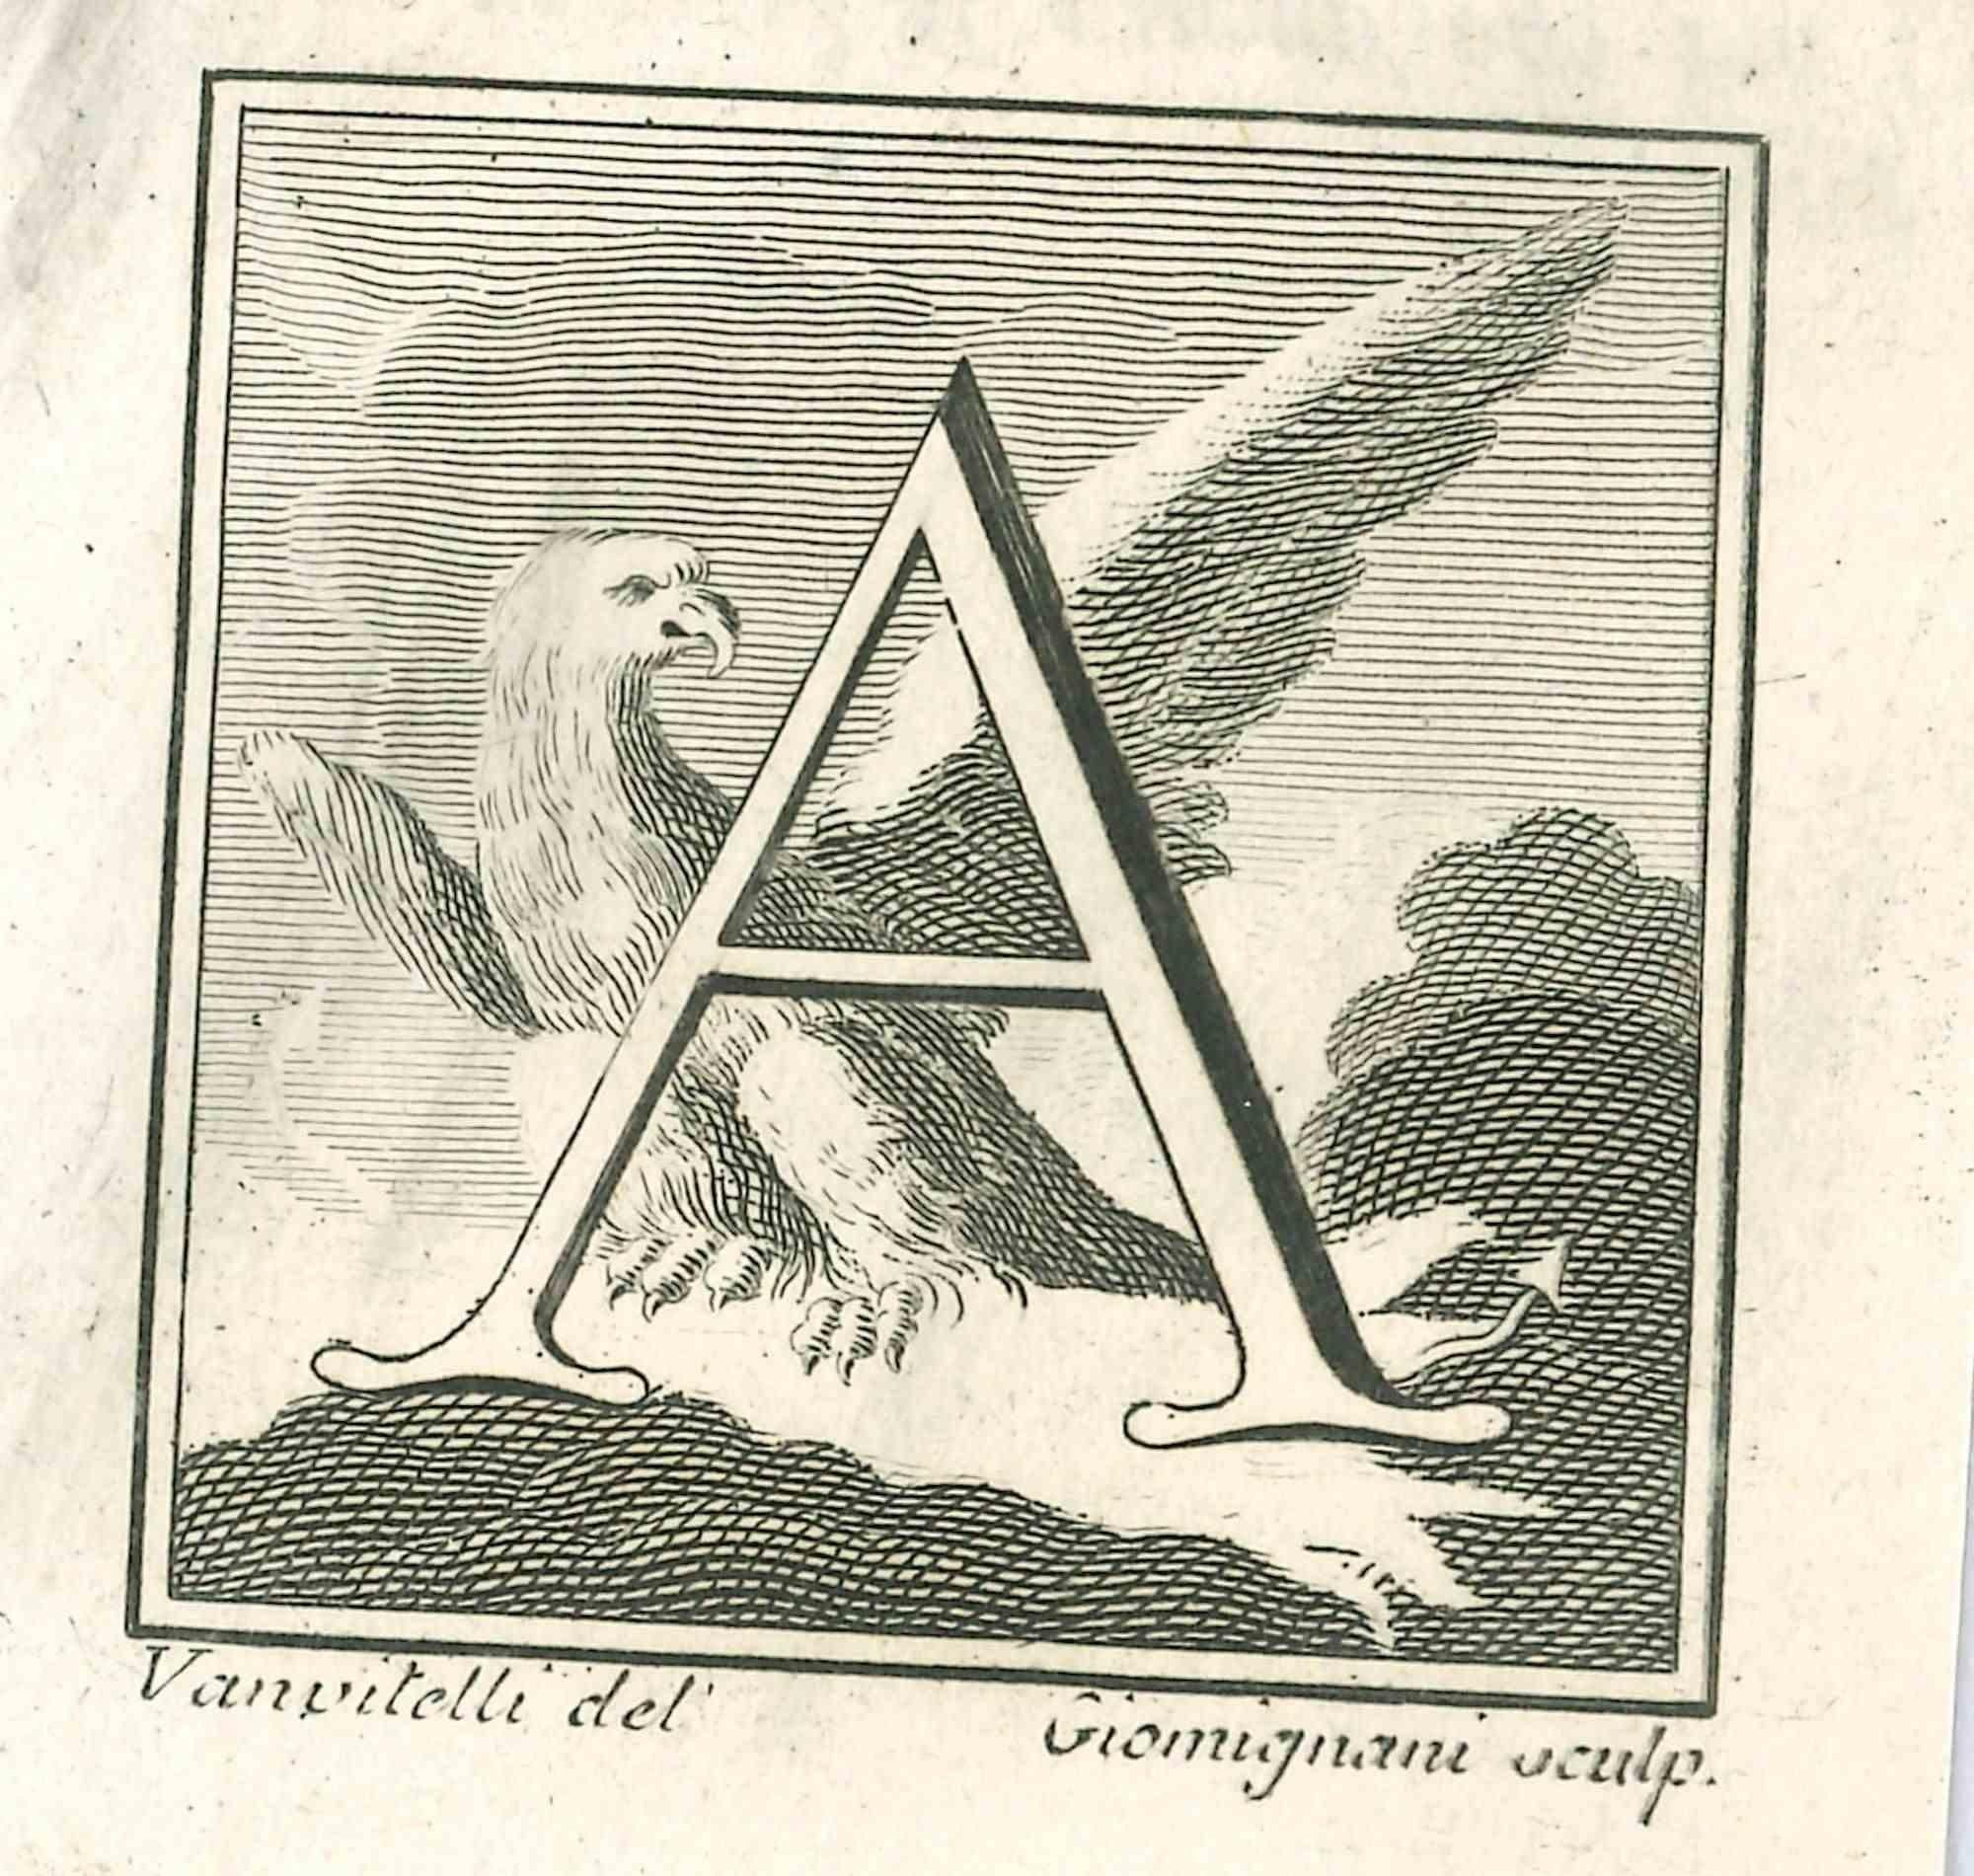 Lettre de l'alphabet A,  de la série "Antiquités d'Herculanum", est une gravure sur papier réalisée par Luigi Vanvitelli au 18ème siècle.

Bonnes conditions.

La gravure appartient à la suite d'estampes "Antiquités d'Herculanum exposées" (titre